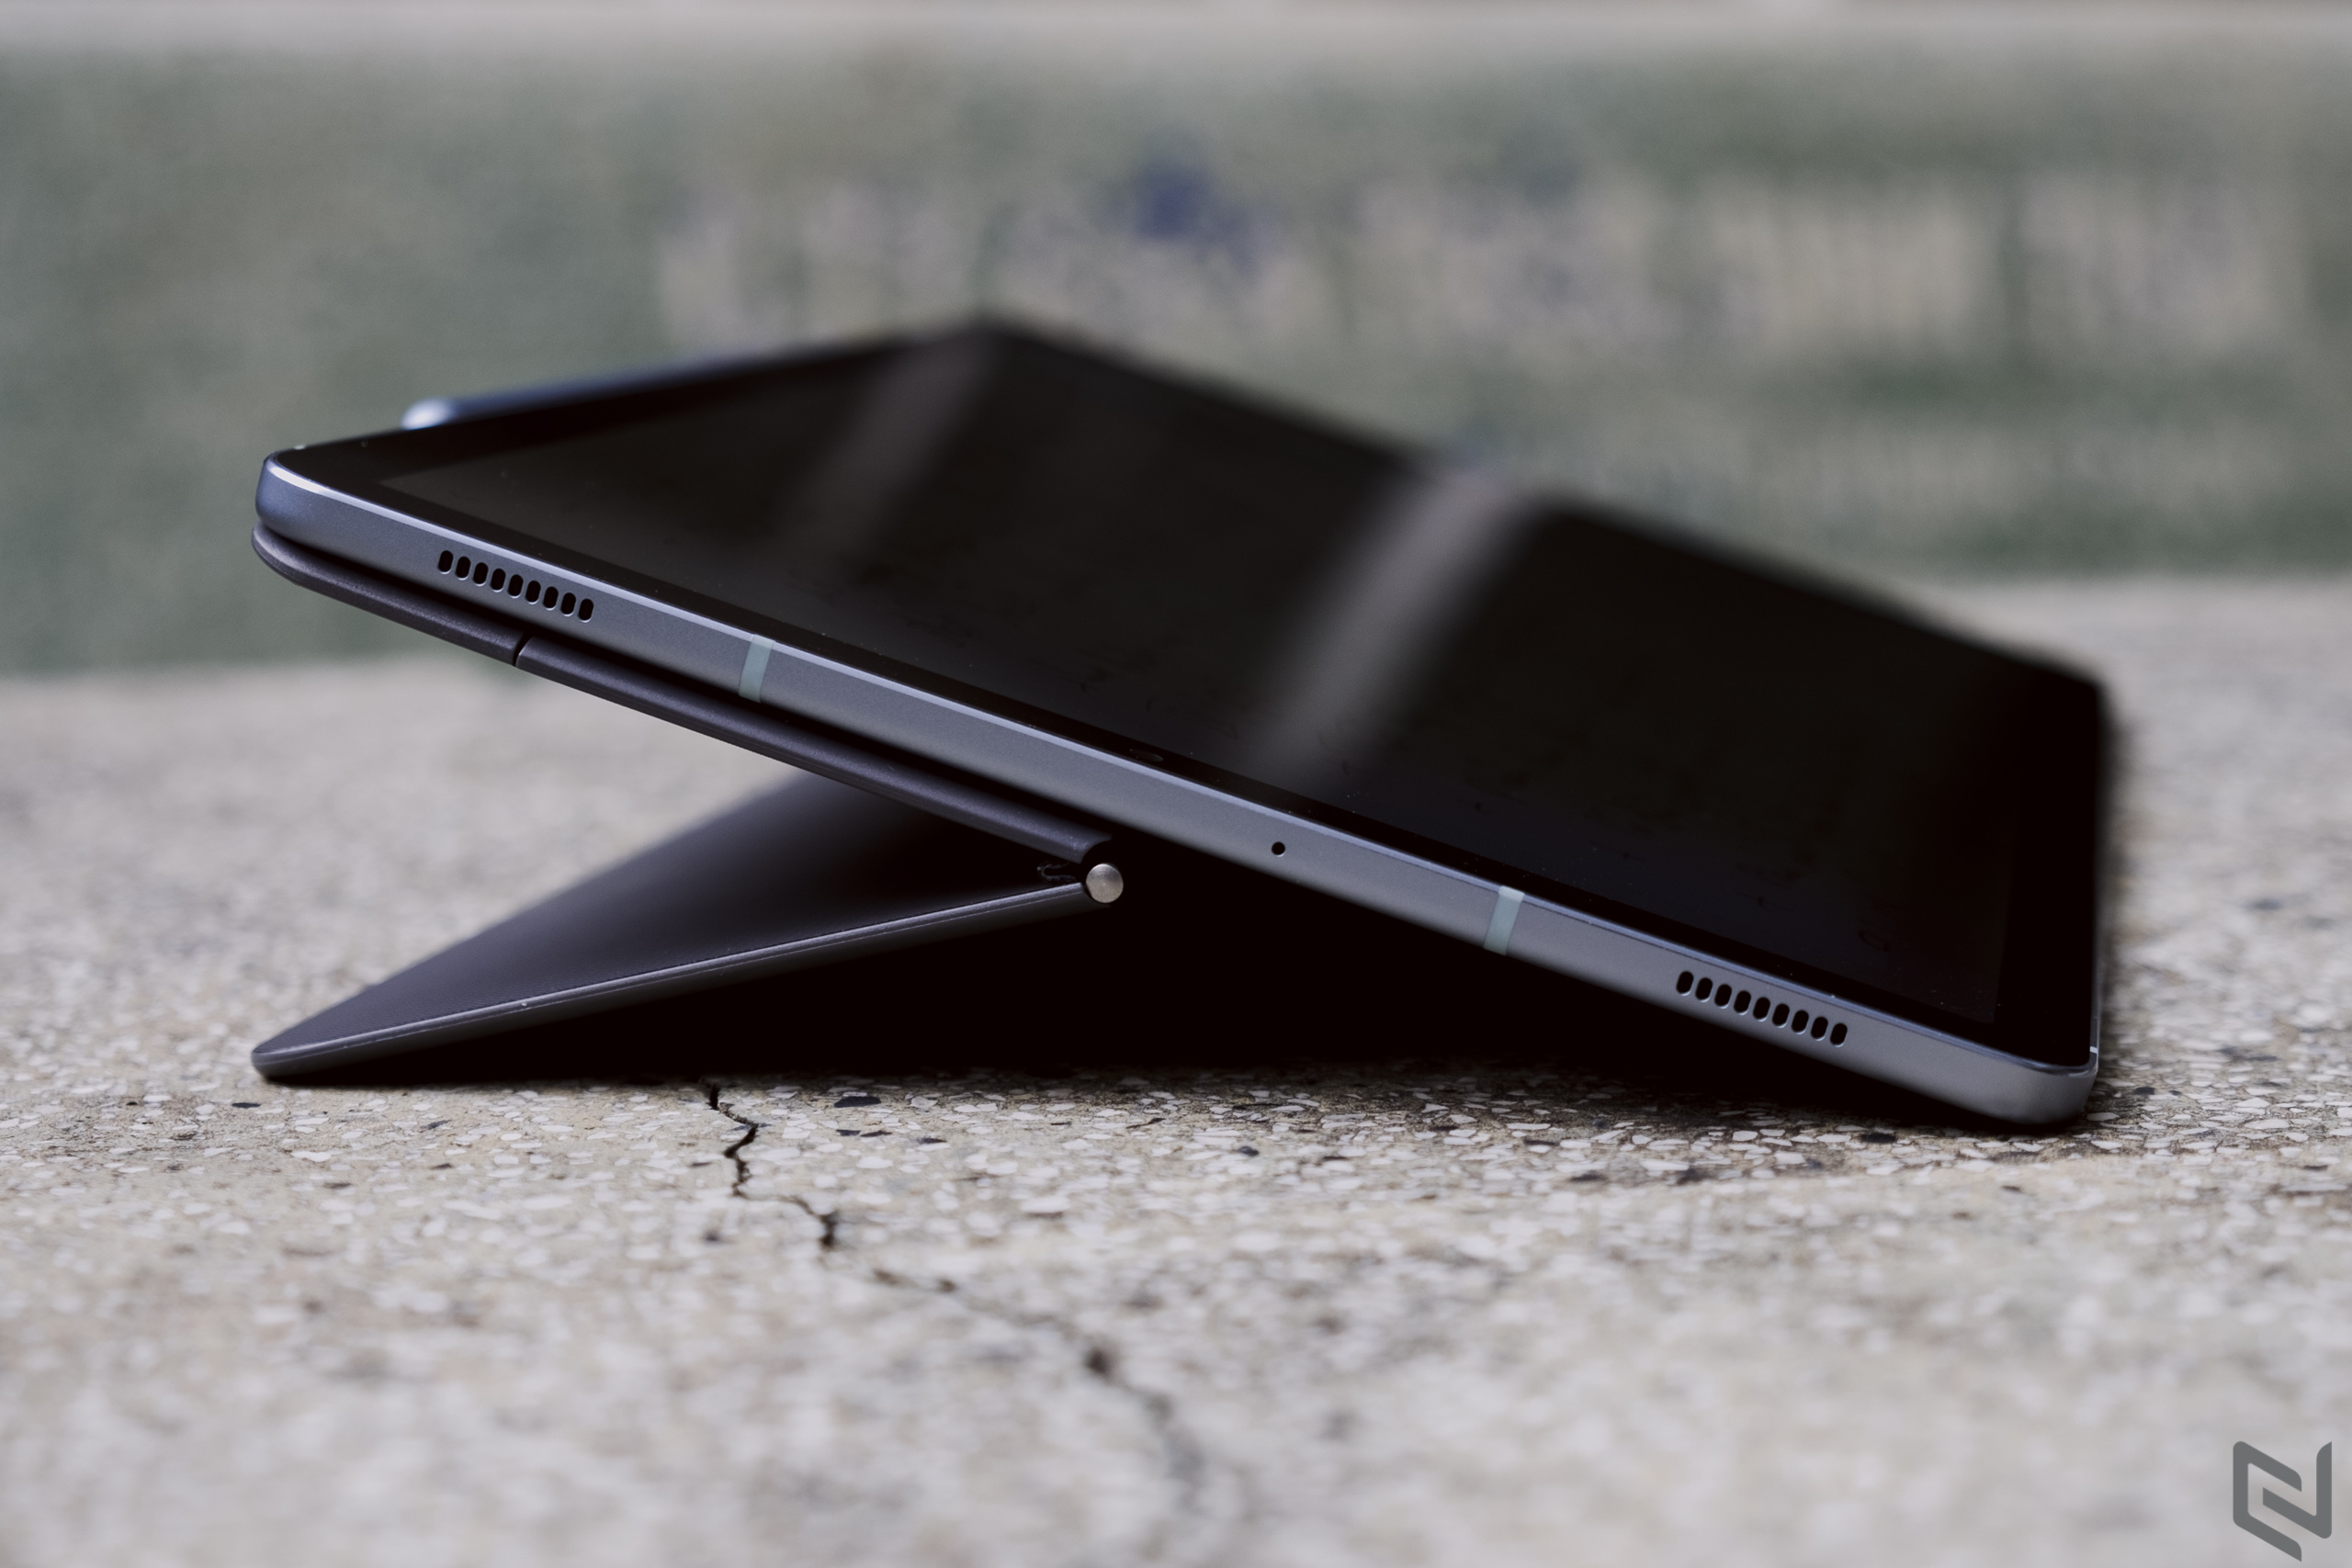 Đánh giá Samsung Galaxy Tab S6: Thiết kế đẹp mắt với bút S-Pen tiện dụng, cấu hình rất mạnh, tạm thay thế laptop